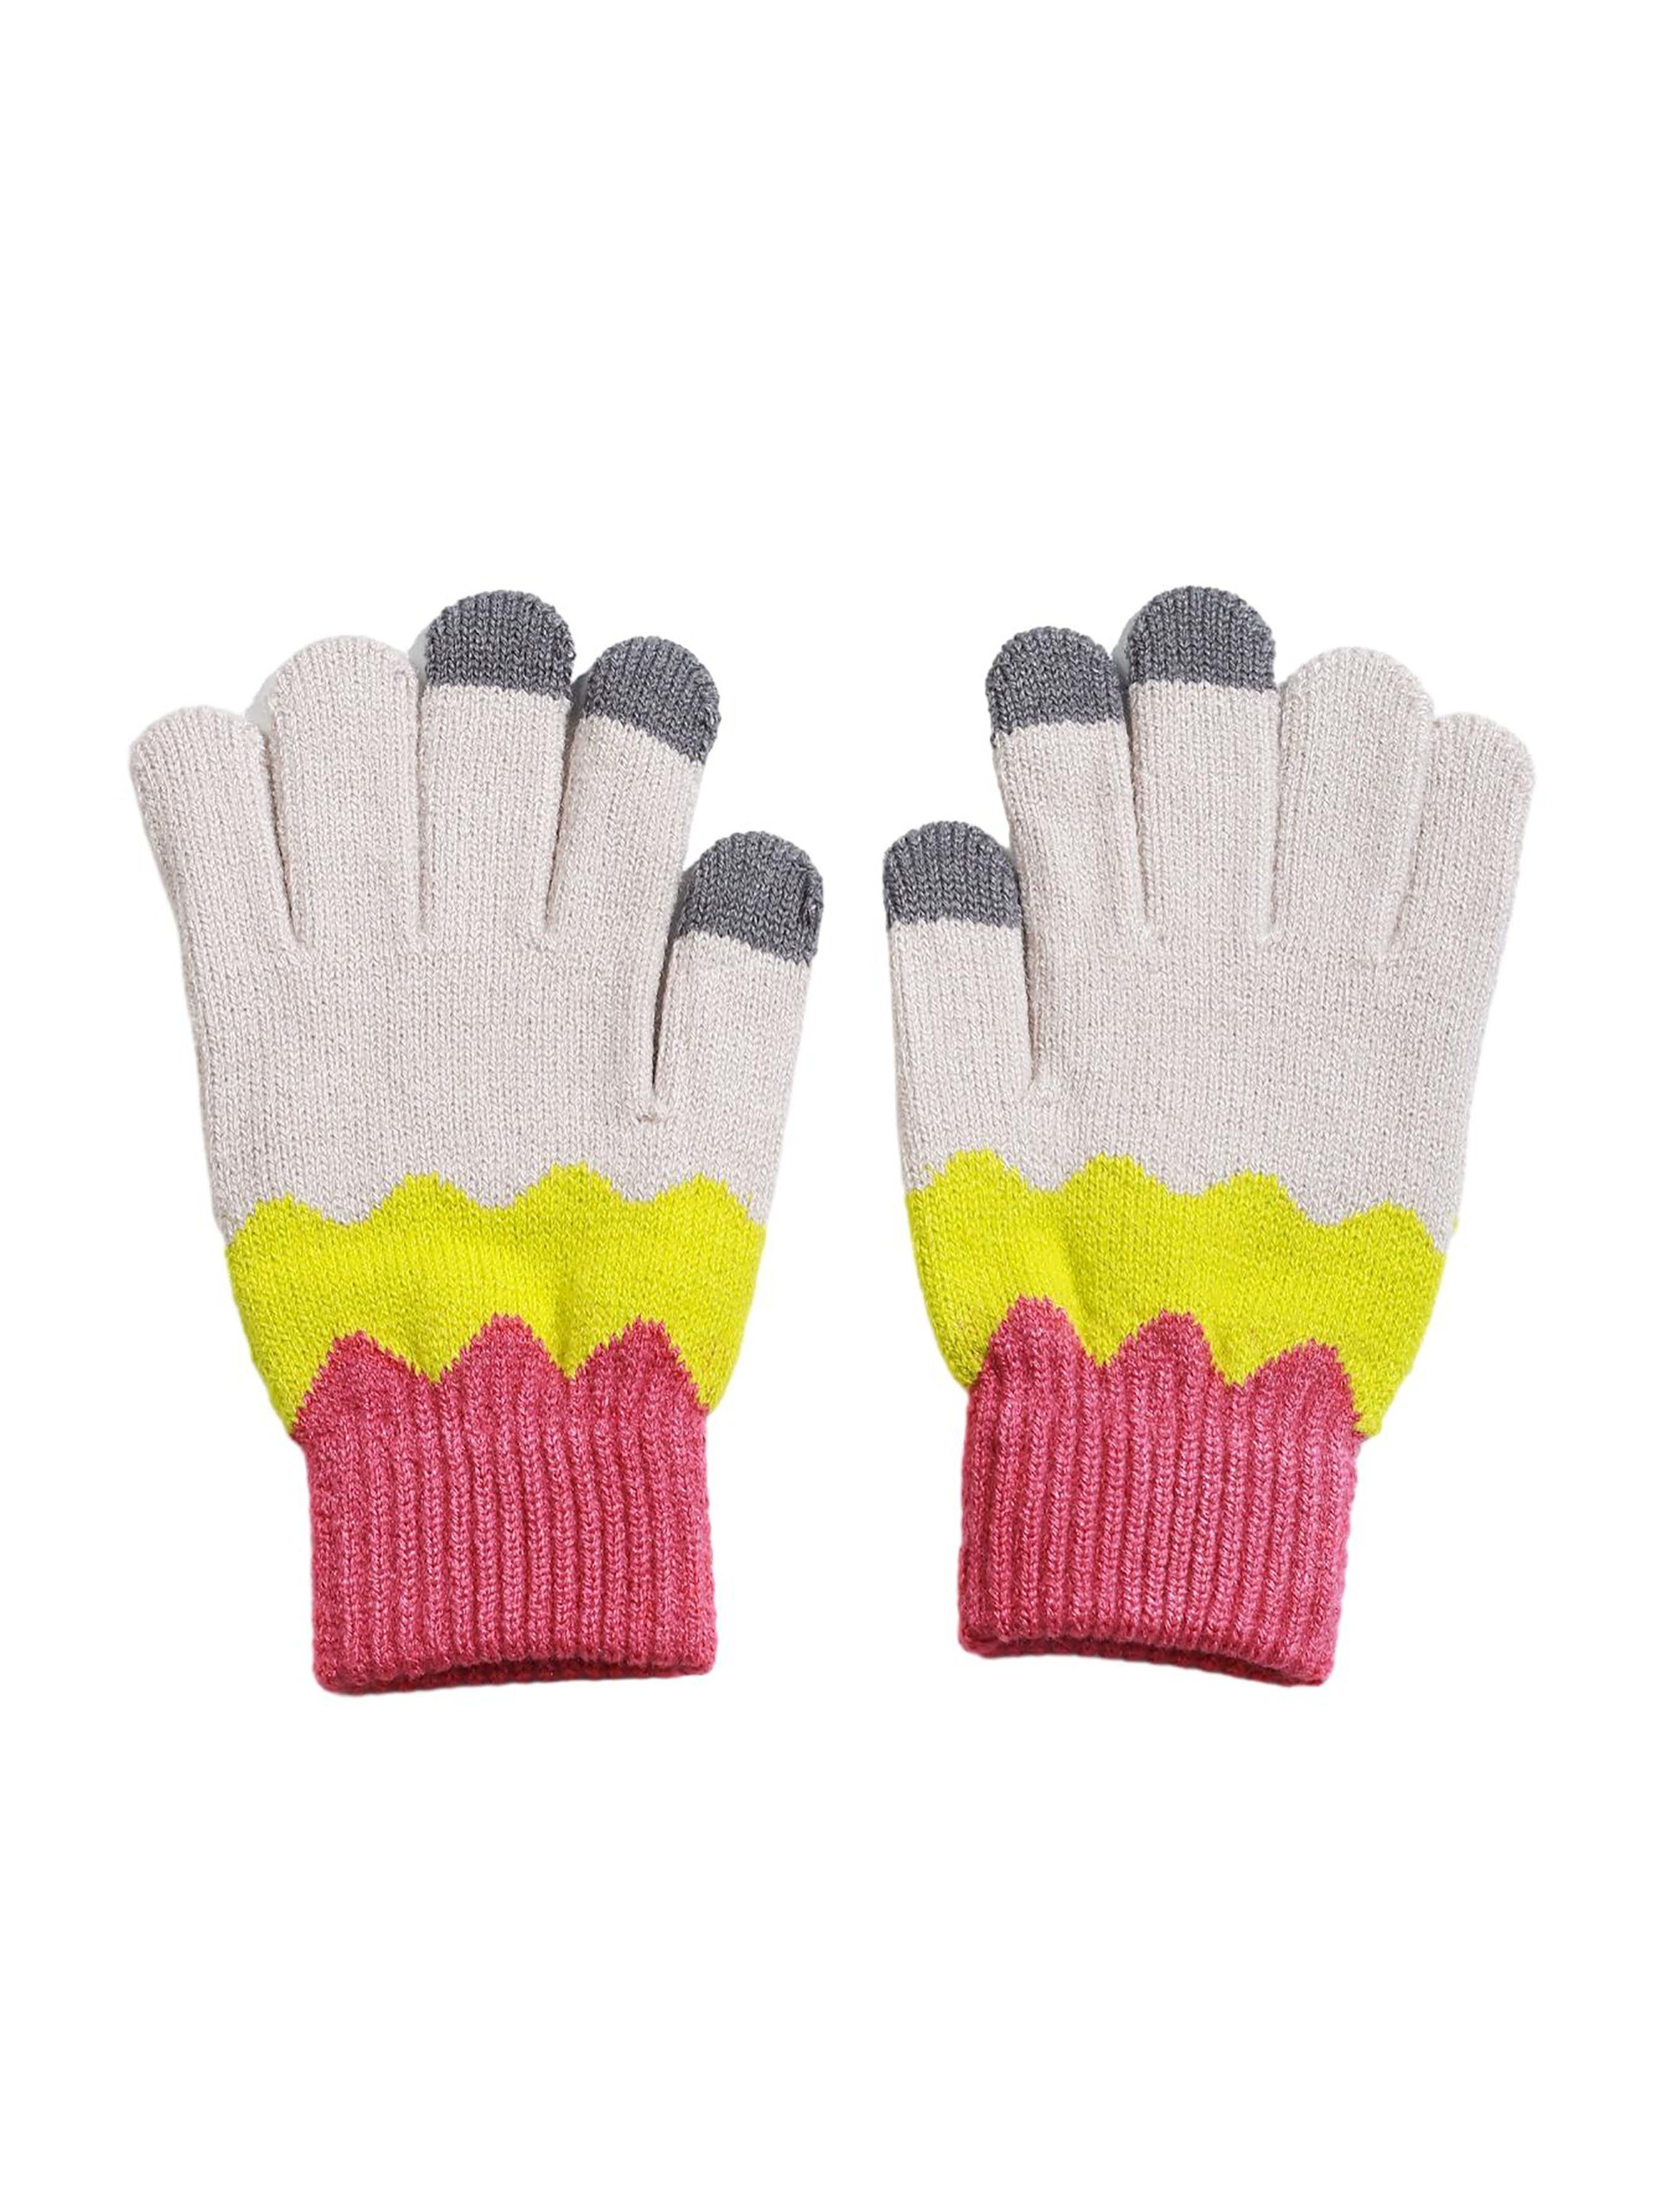 SRRINM Trikot-Handschuhe Wollhandschuhe und gepolstert warm